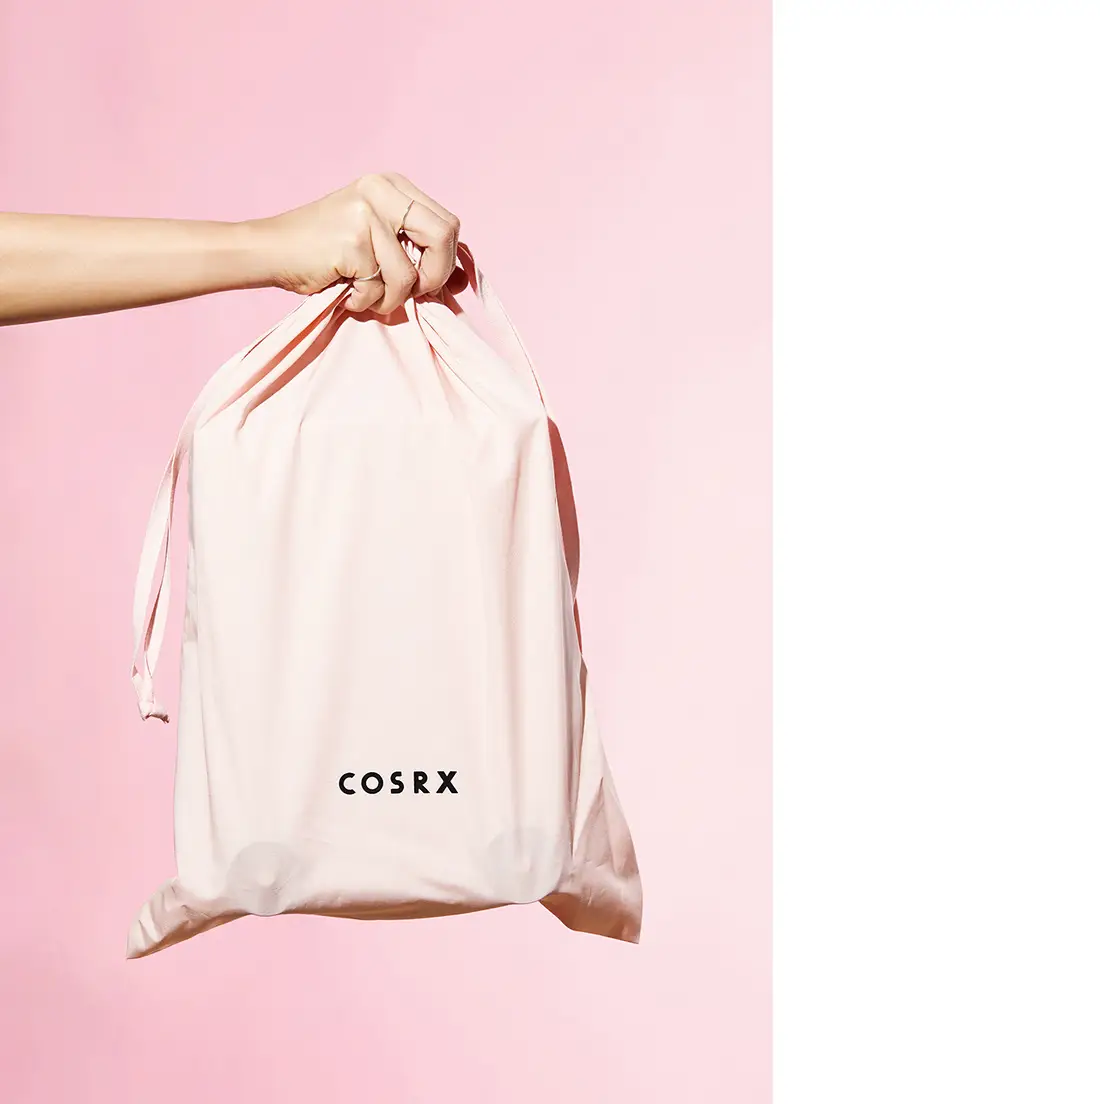 Bolsa de lona para presente, bolsa de lona colorida em algodão com cordão para poeira, saco com logotipo impresso personalizado